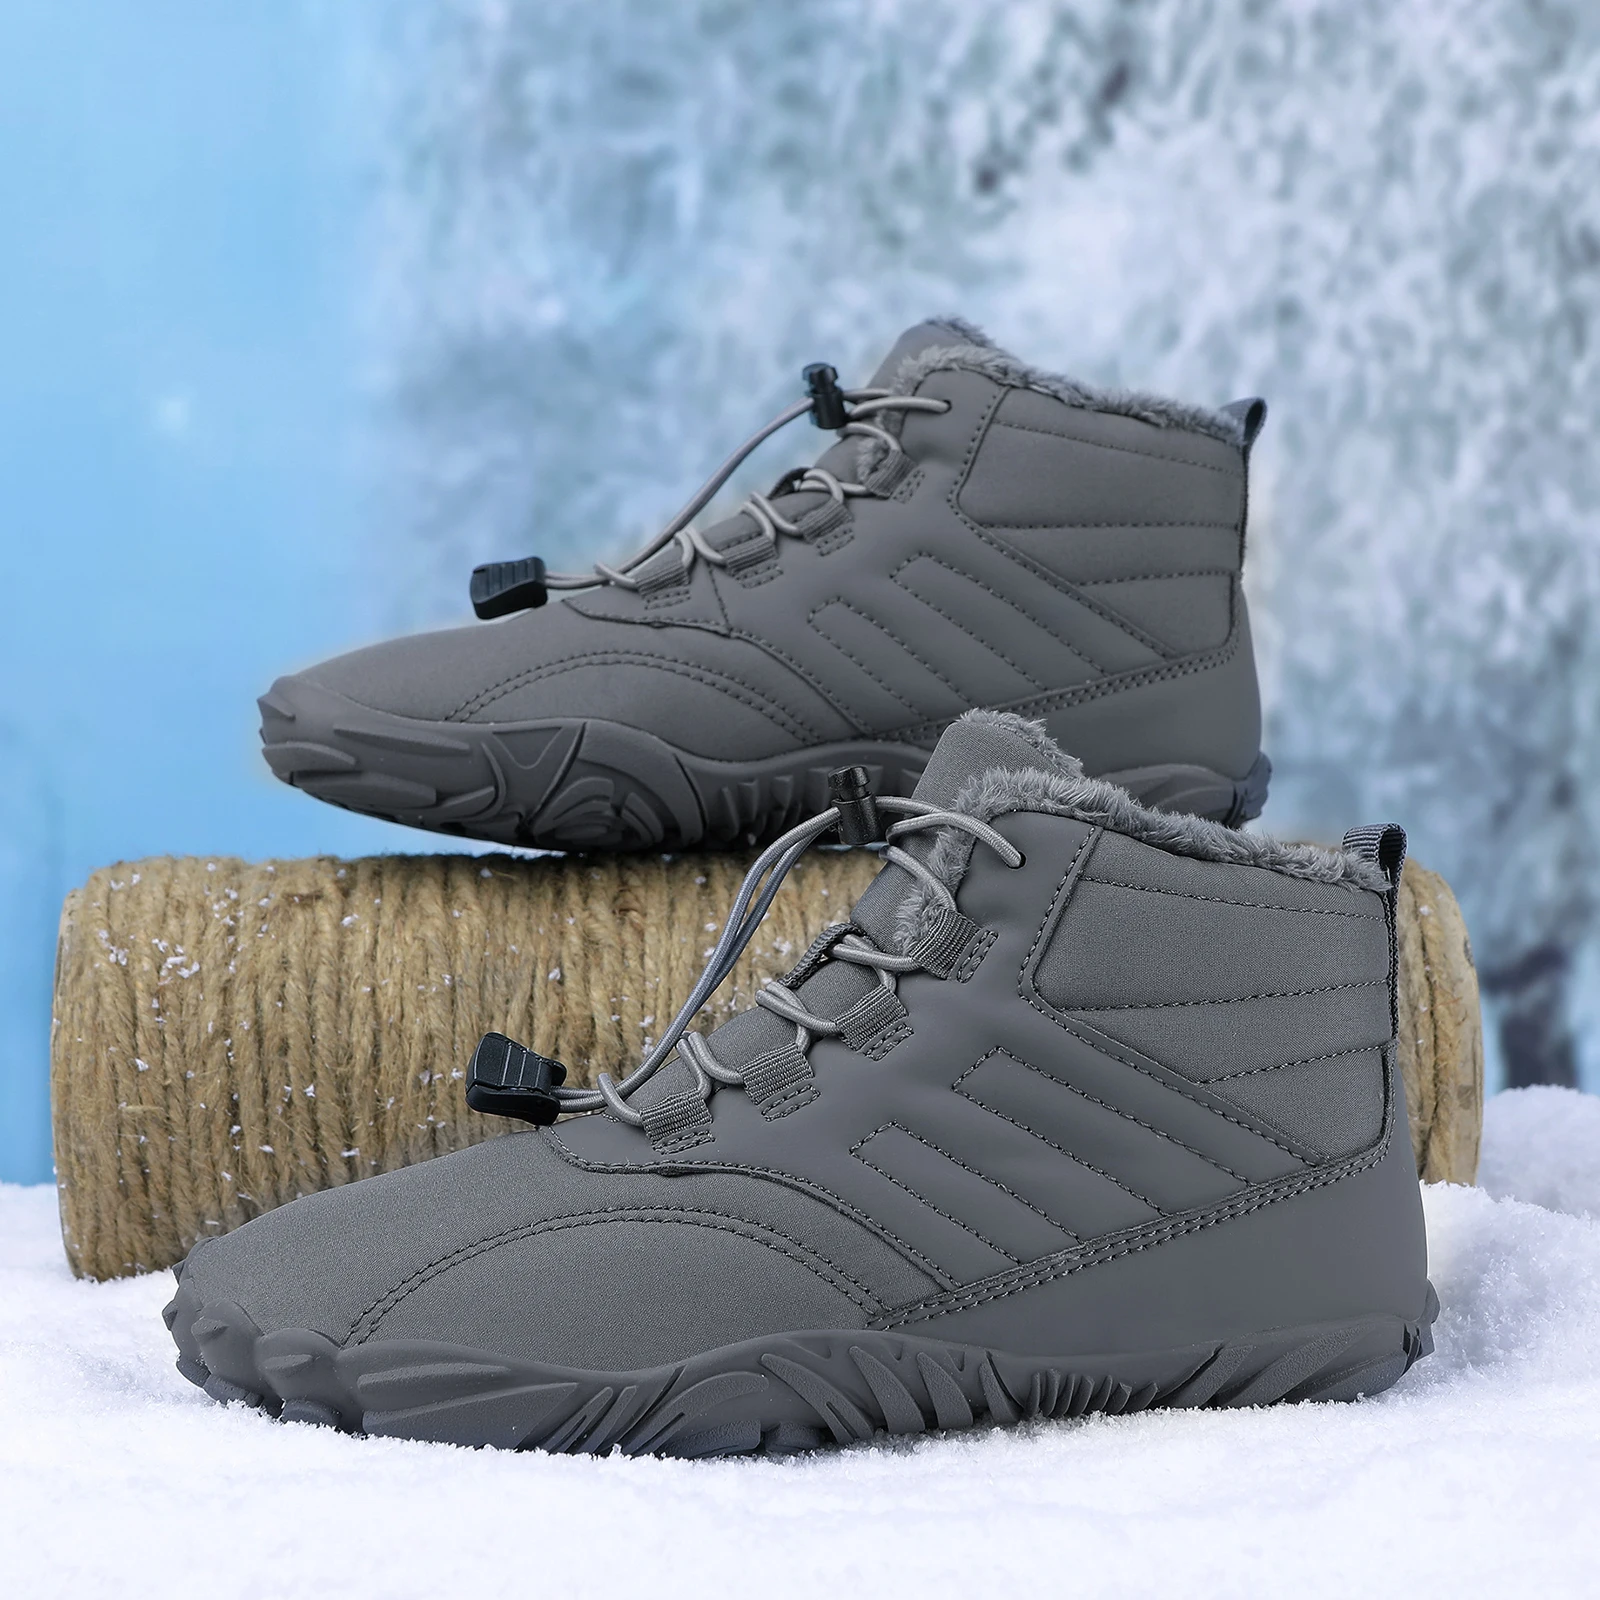 בחורף יחף גברים מגפי חורף עמיד למים נעלי קרסול שלג נעלי קטיפה נעלי הליכה חמים נעלי ספורט גודל גדול 46 נעליים3